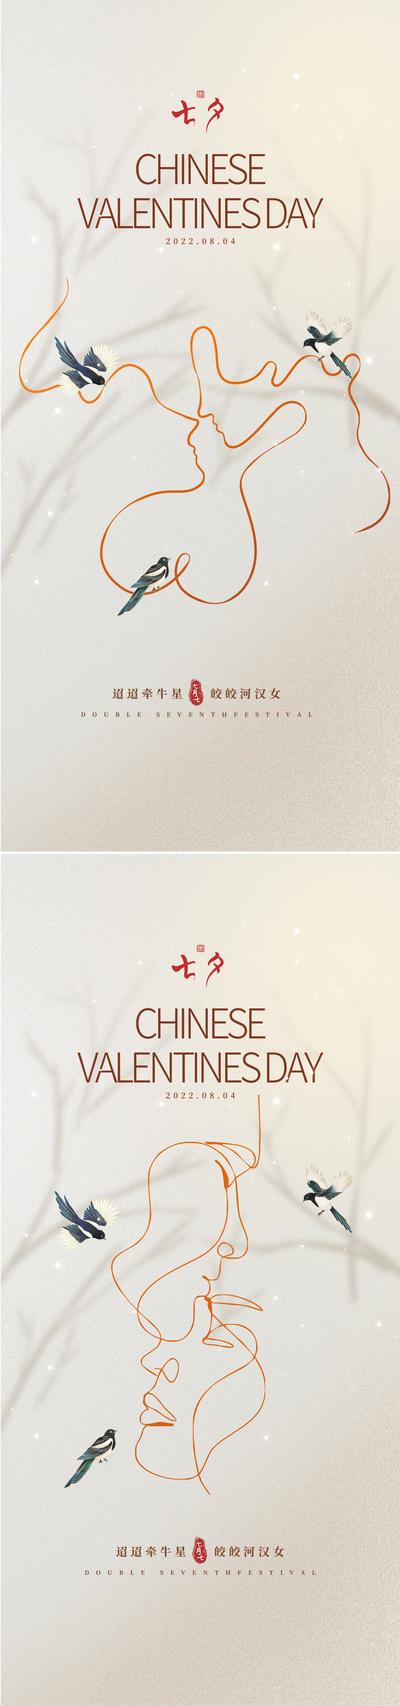 【南门网】海报 中国传统节日 七夕 情人节 线条 喜鹊